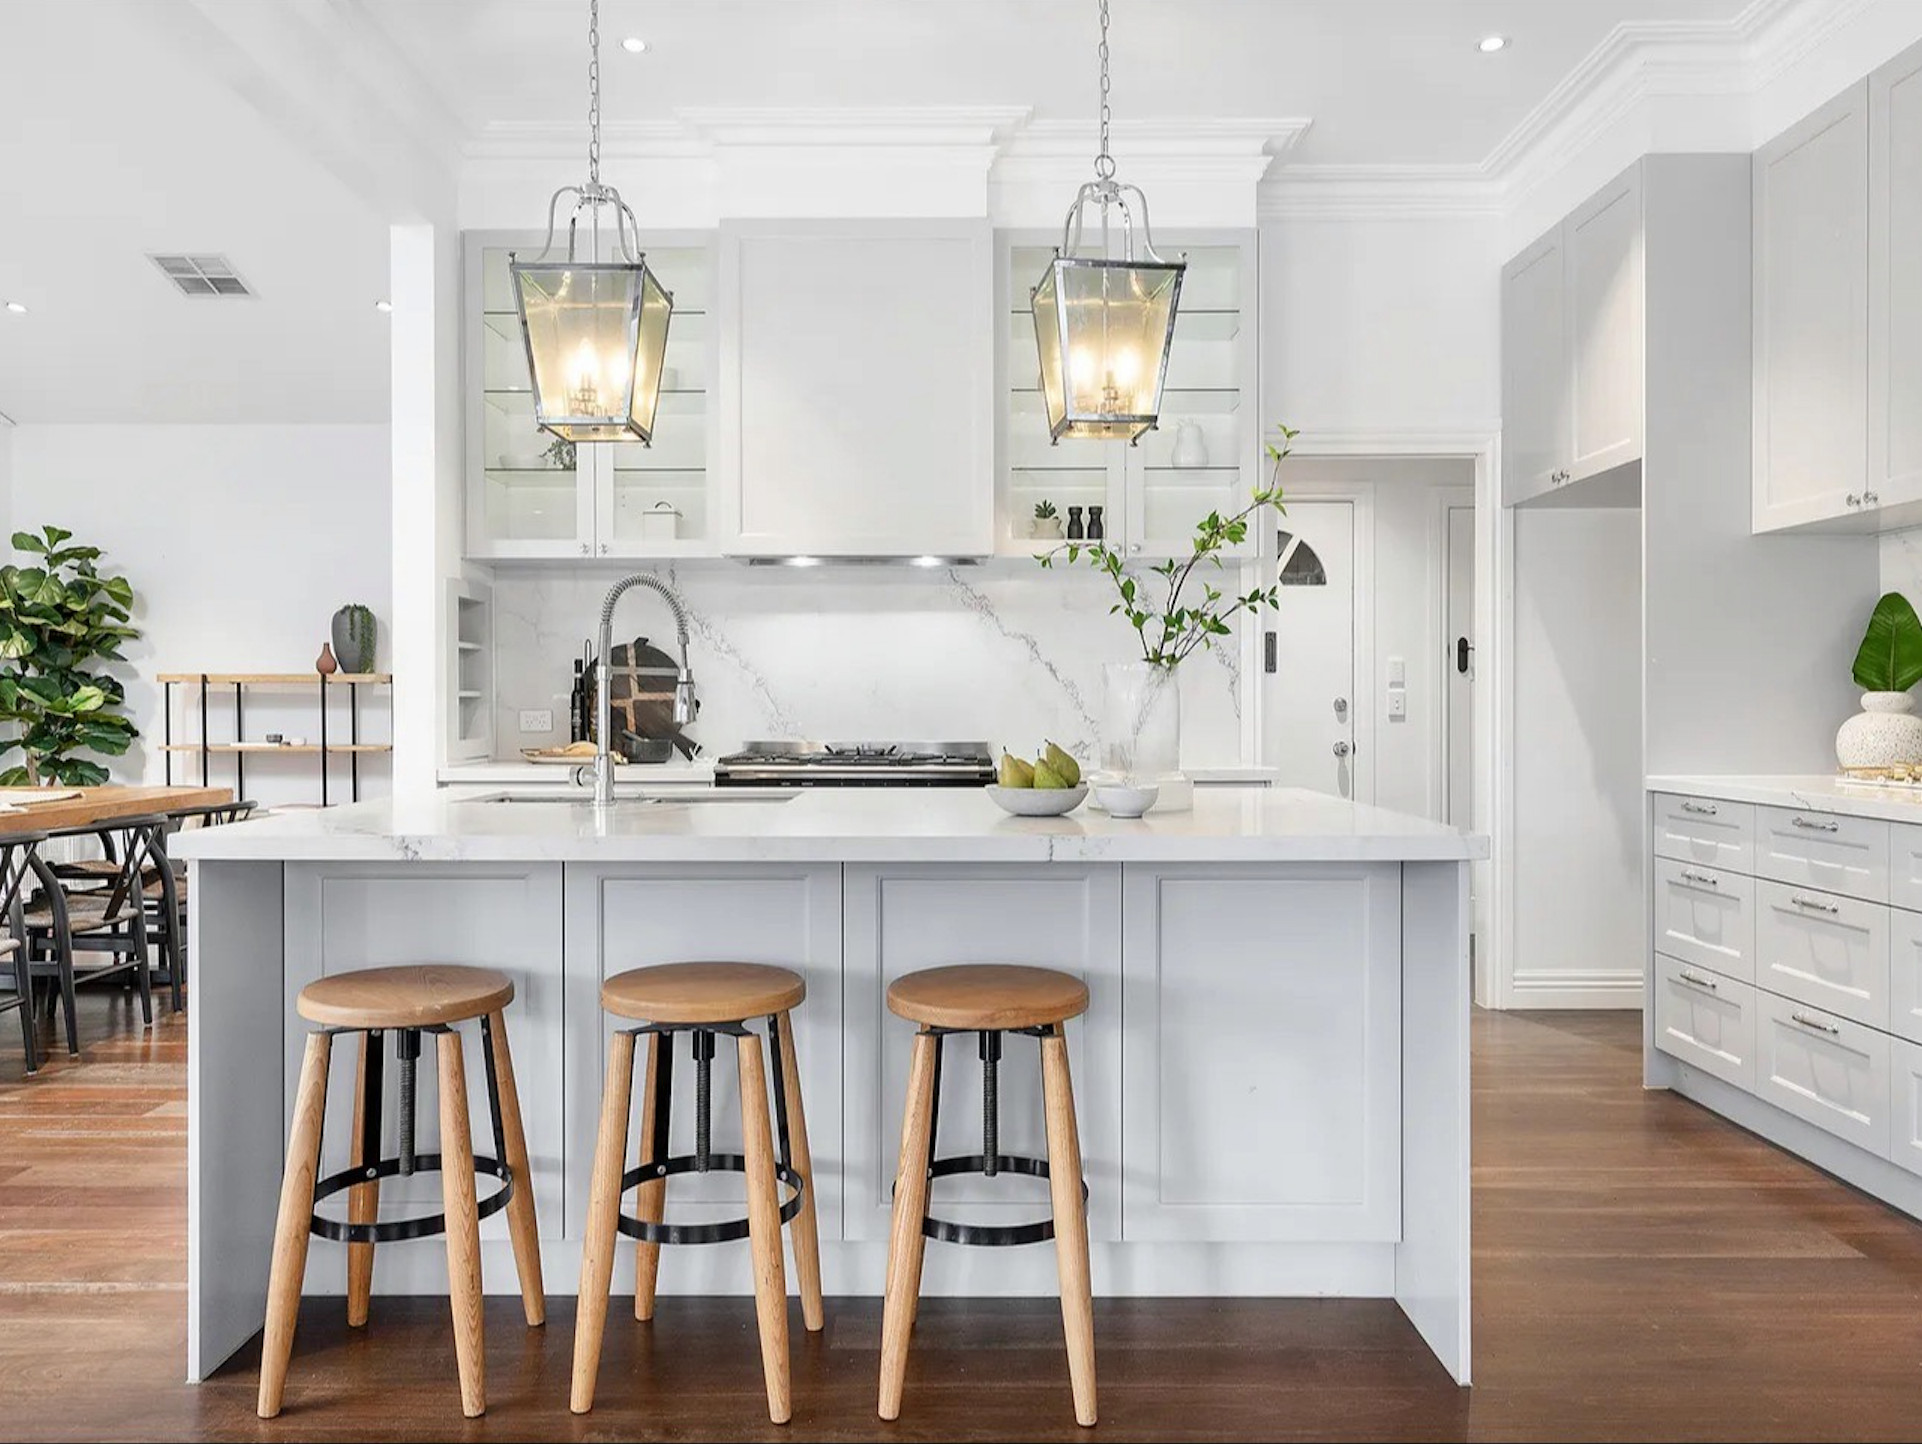 Kitchen - kitchen idea in Melbourne